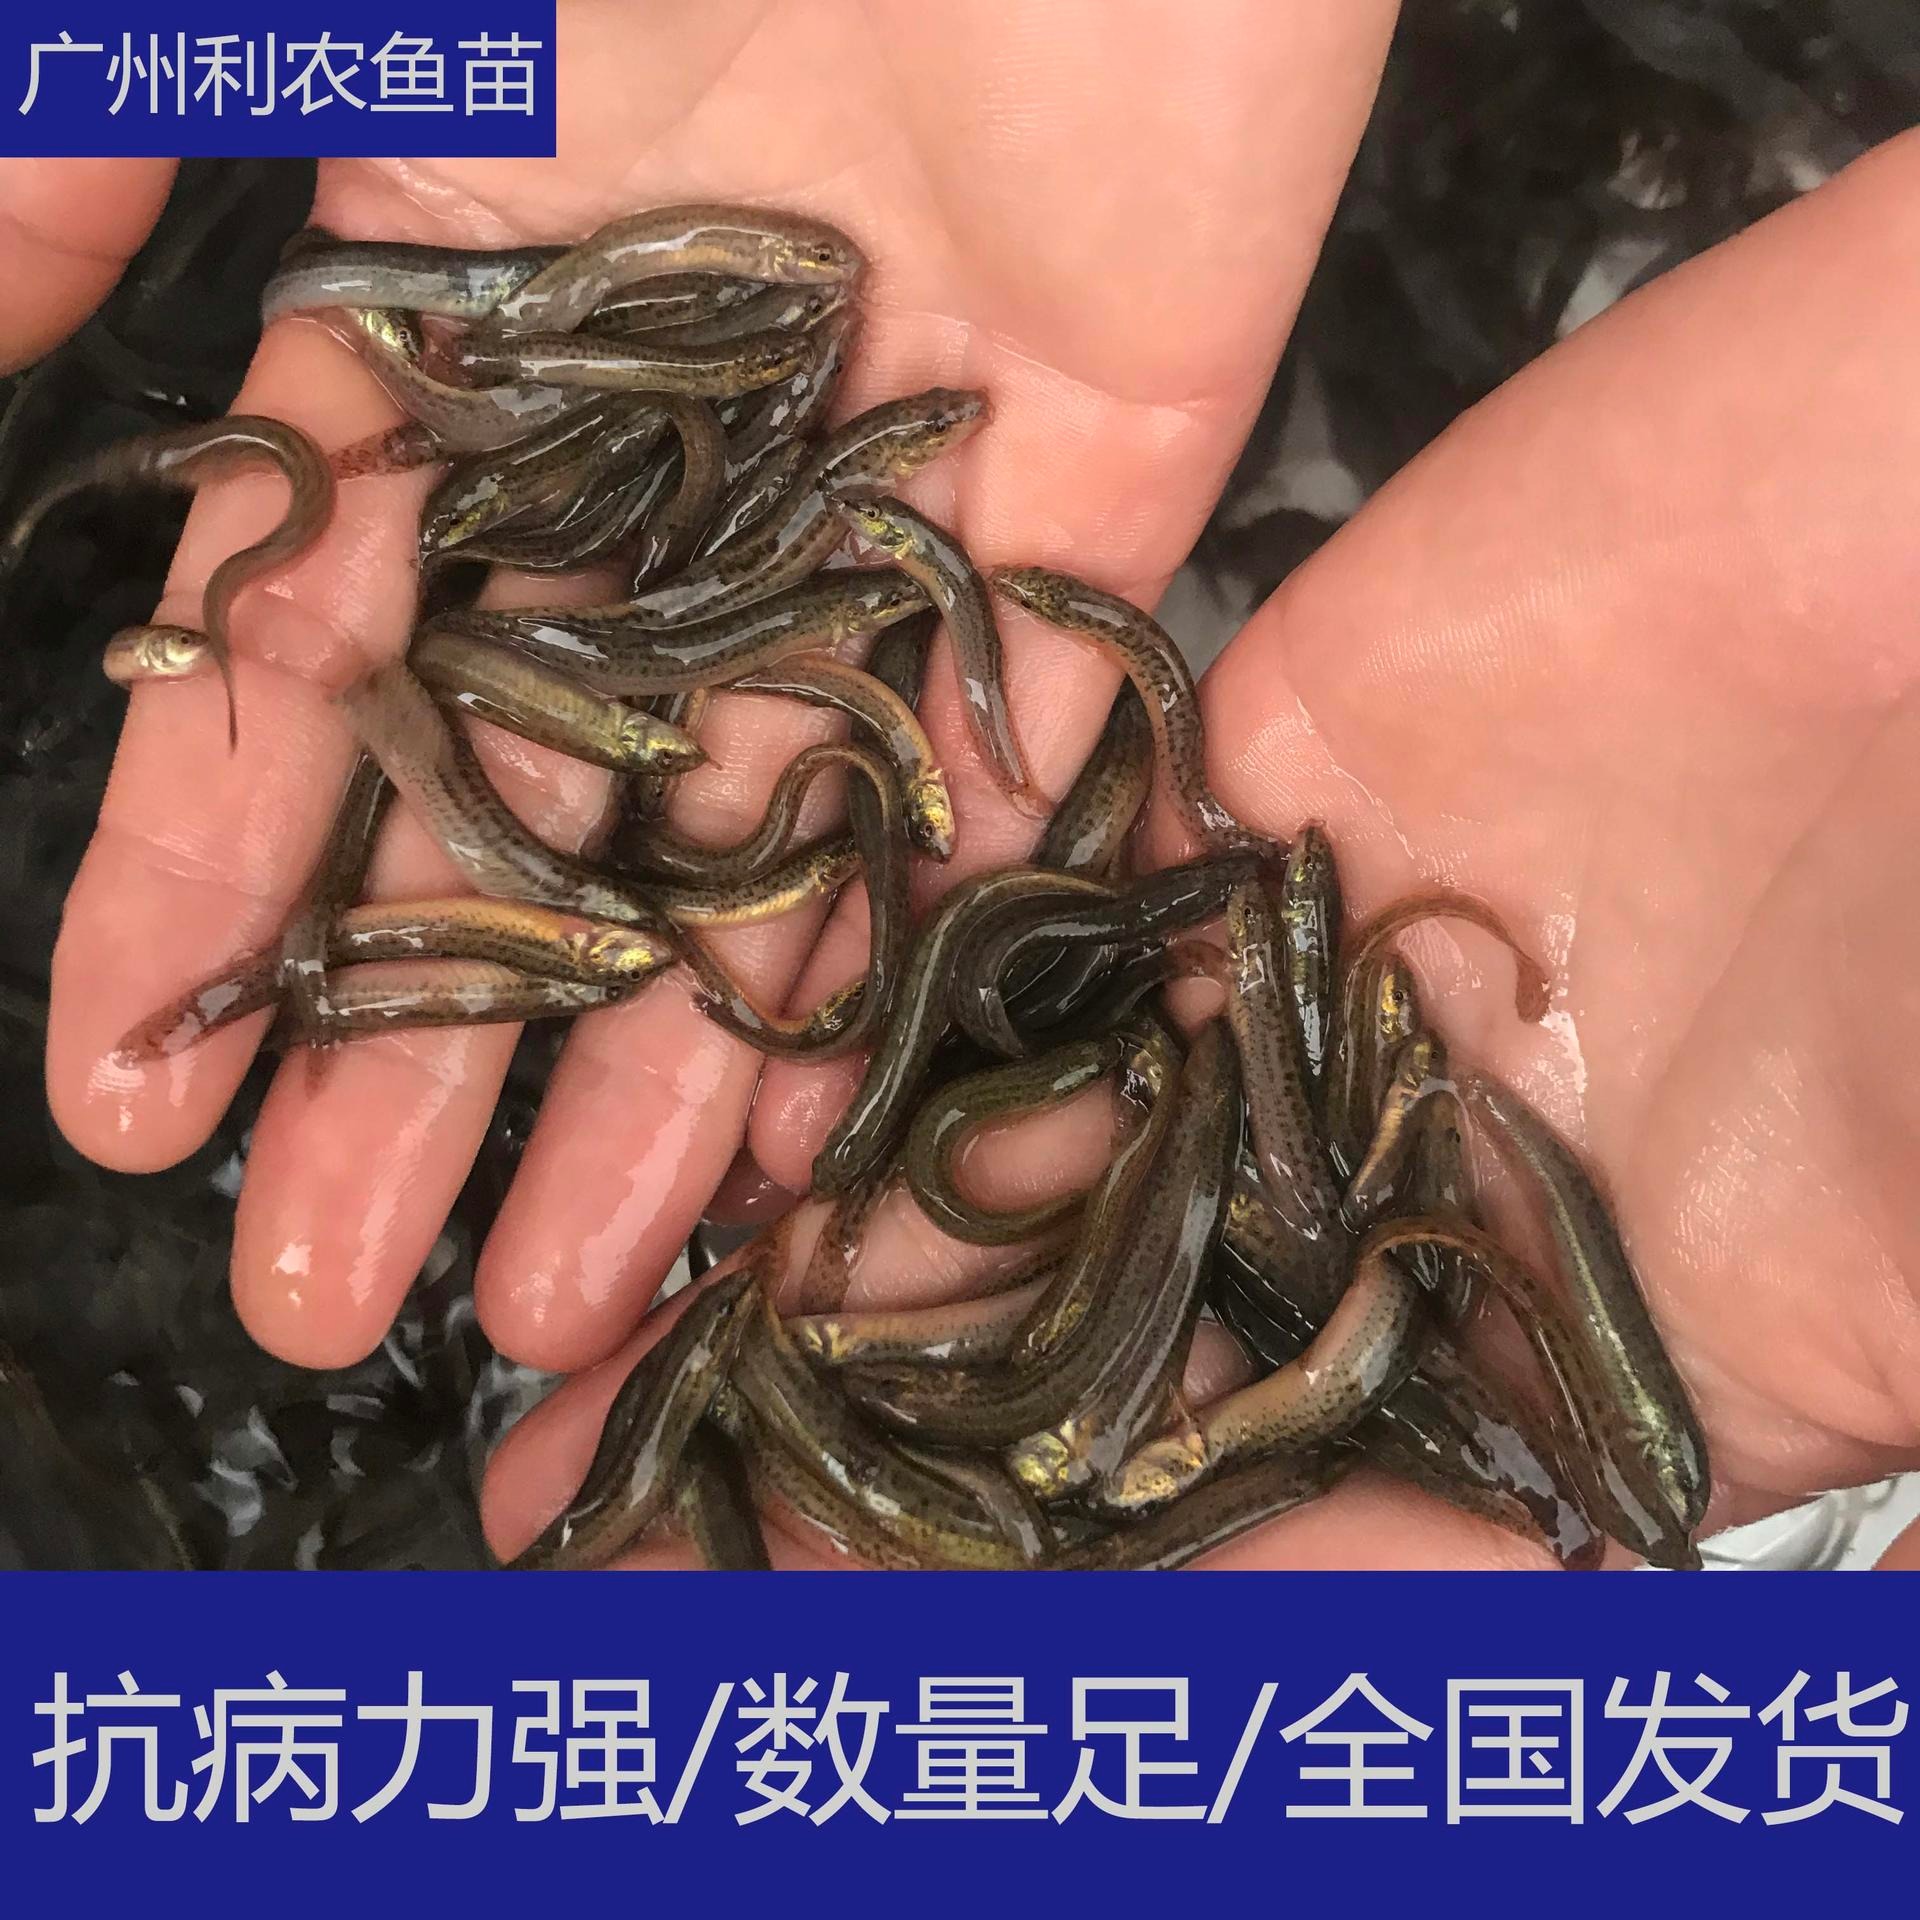 少病害 广西梧州泥鳅苗批发 5cm大量台湾泥鳅苗养殖供应